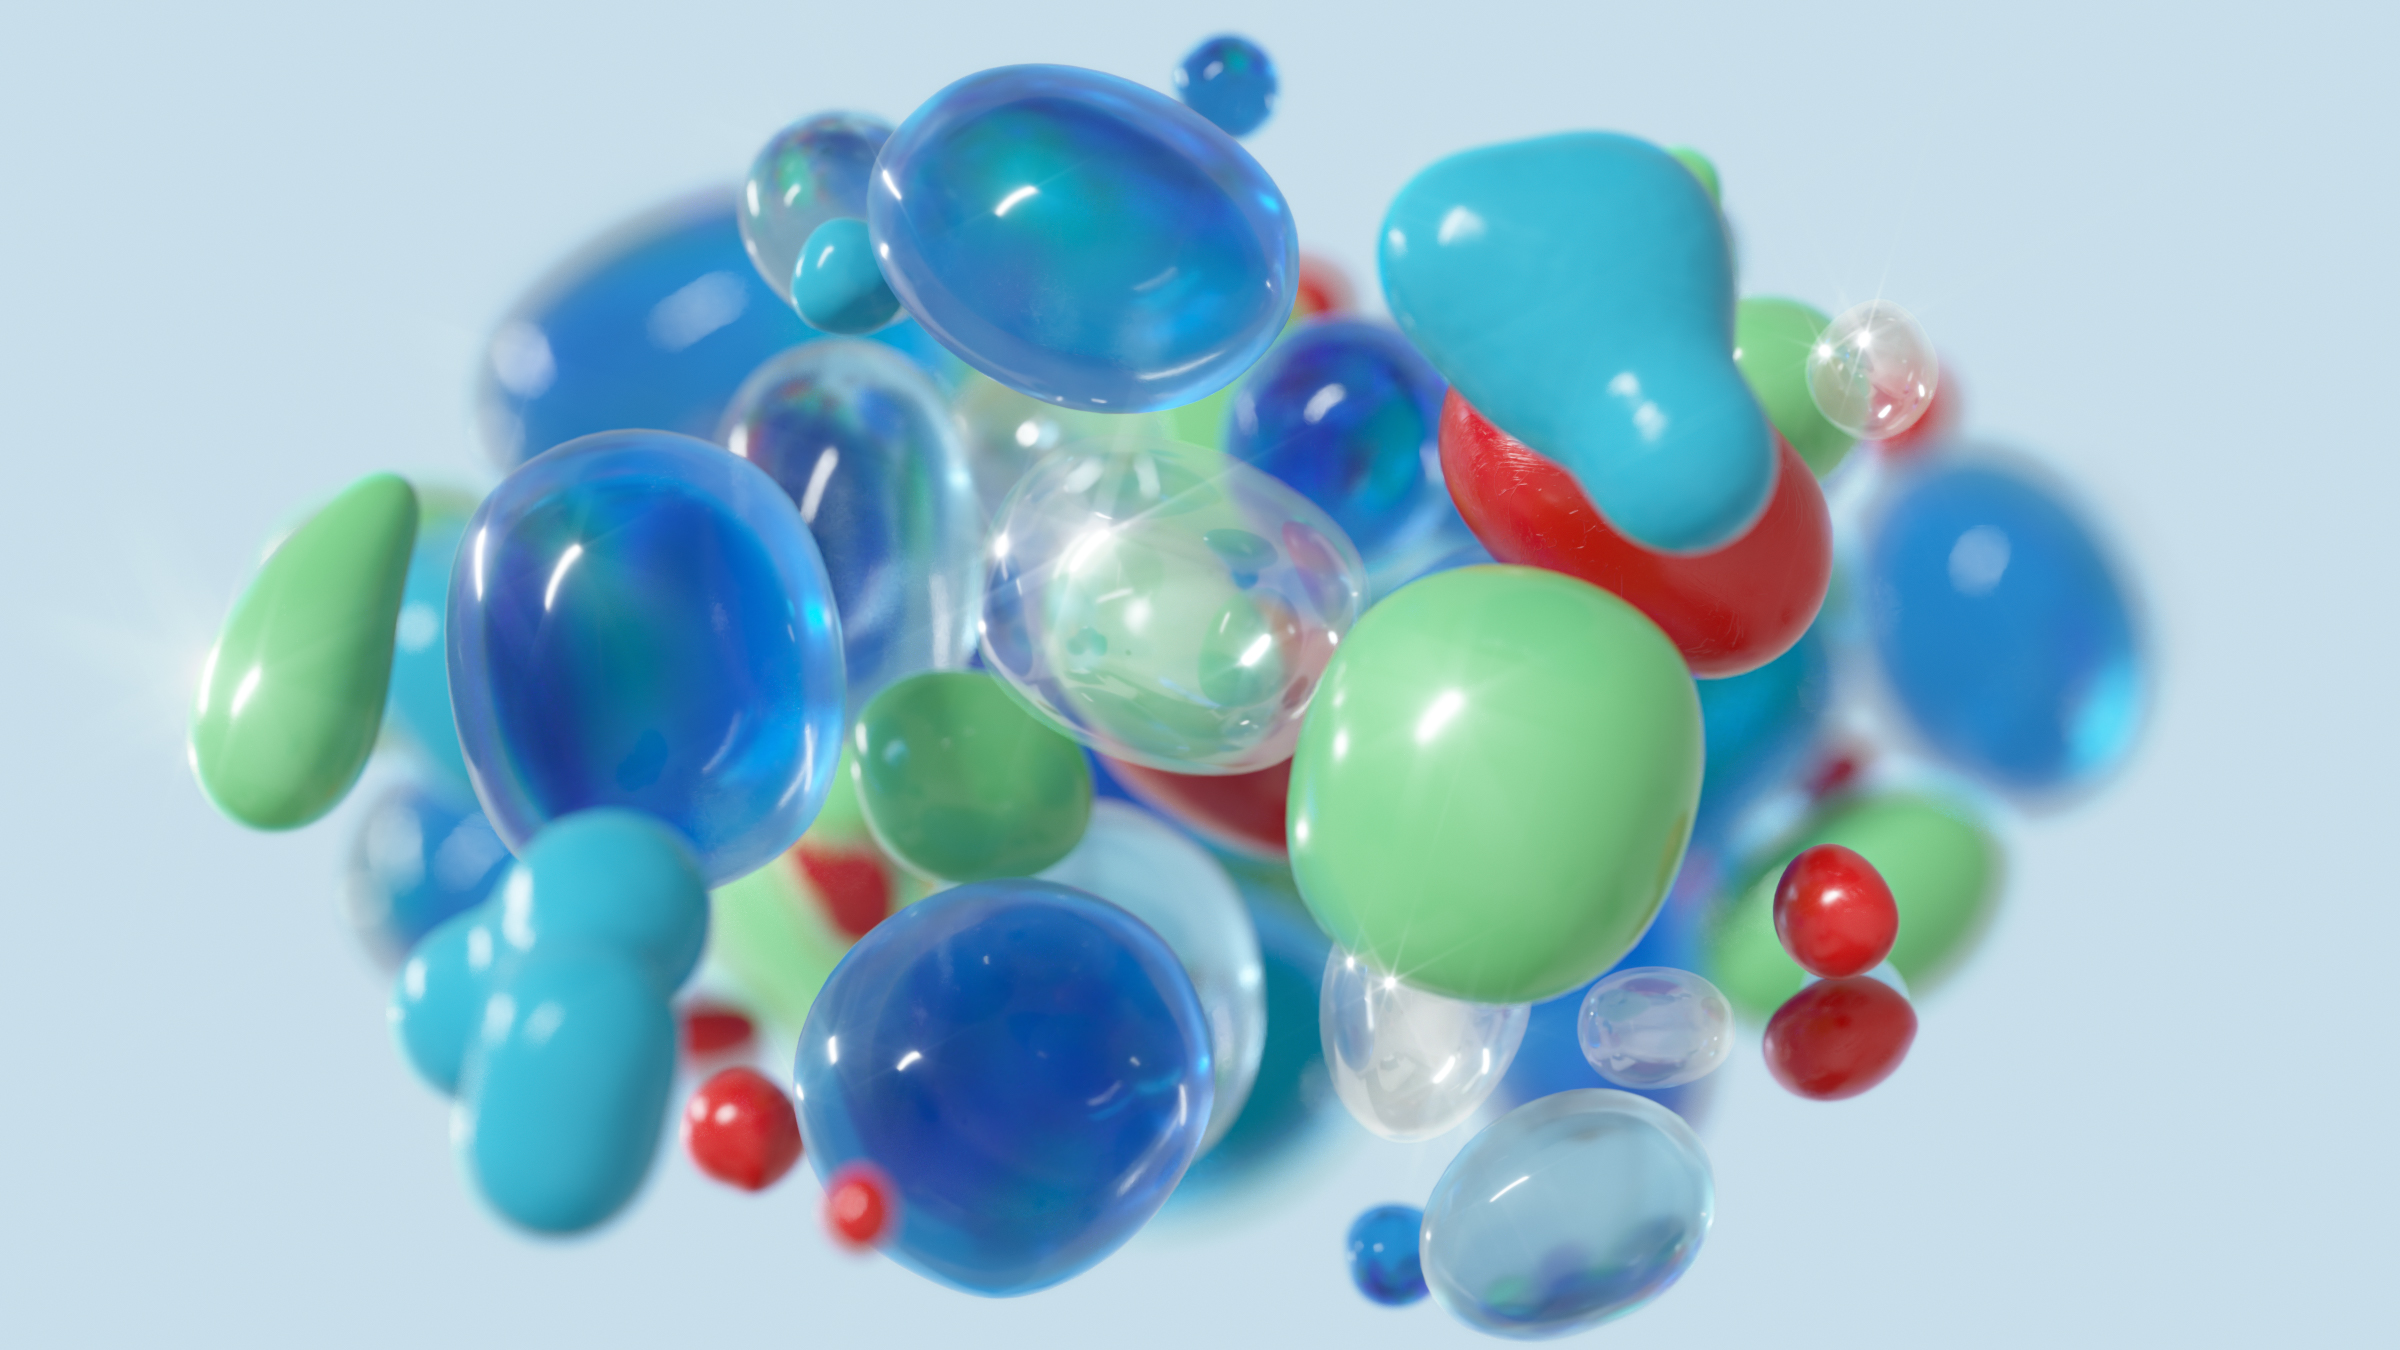 Bubblor i grönt, blått och rött